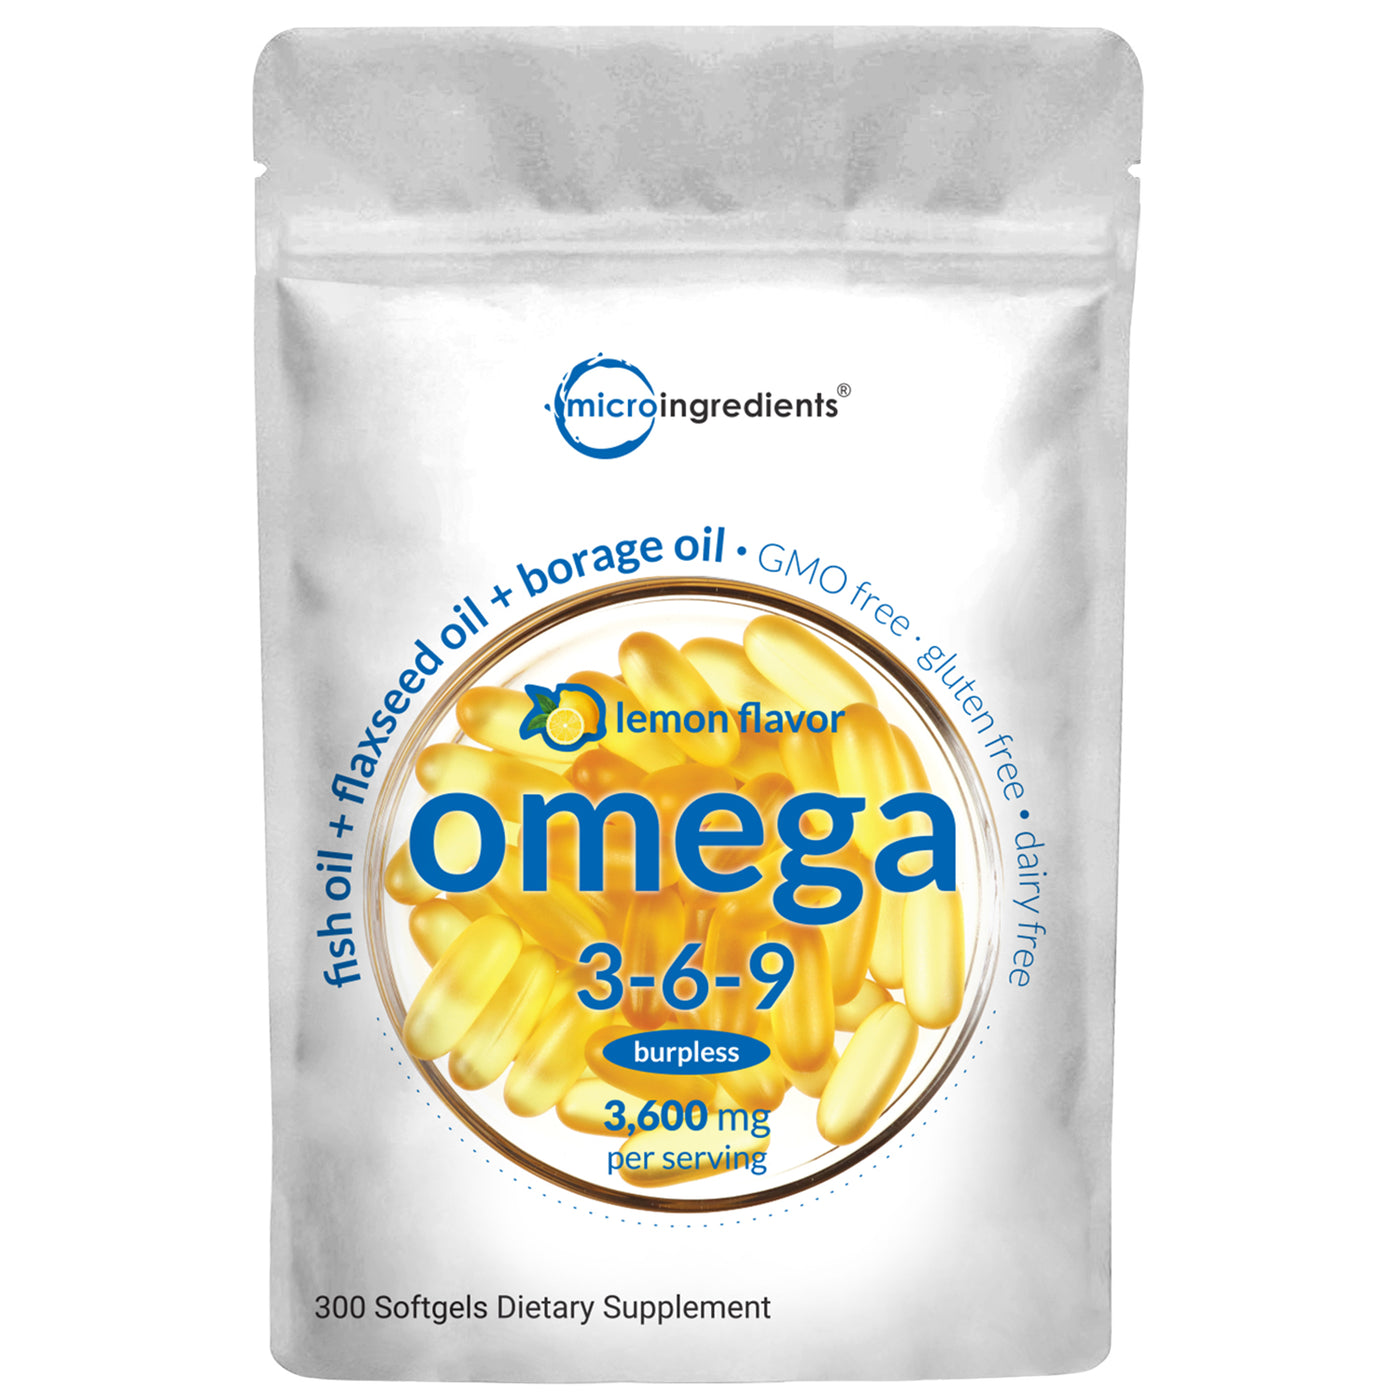 Ultra Omega 3-6-9 Burpless Softgels